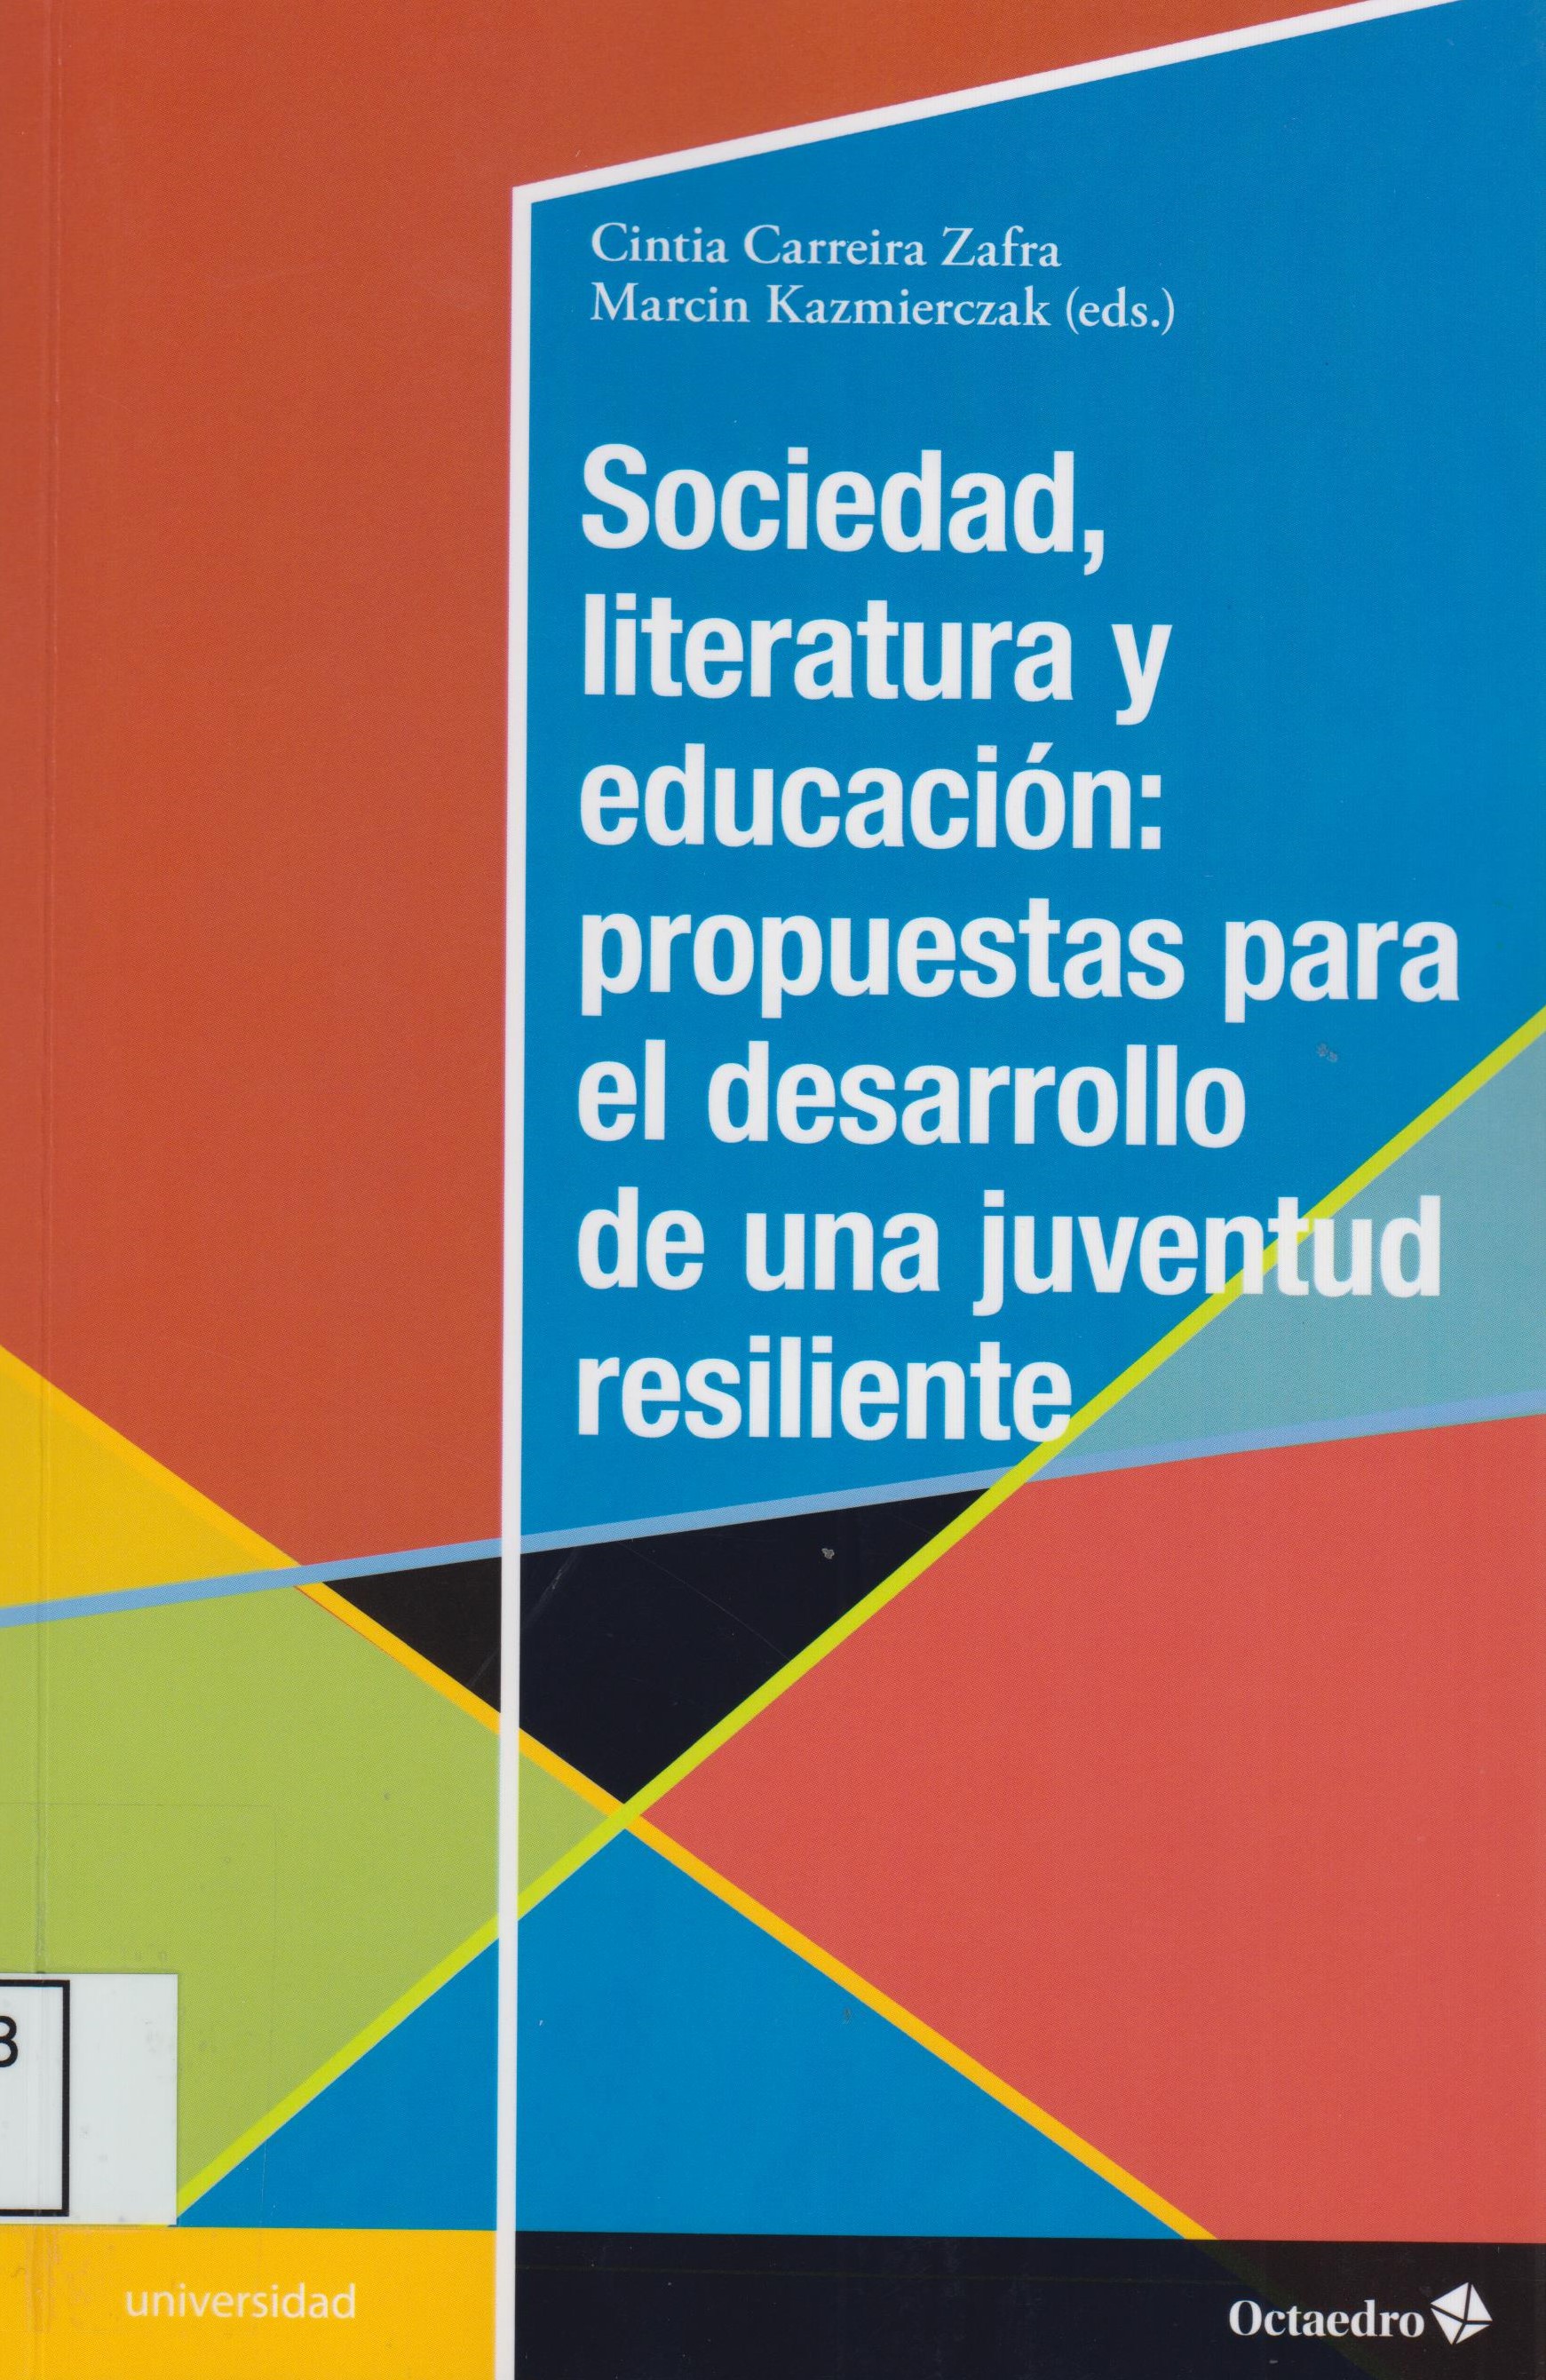 Imagen de portada del libro Sociedad, literatura y educación: